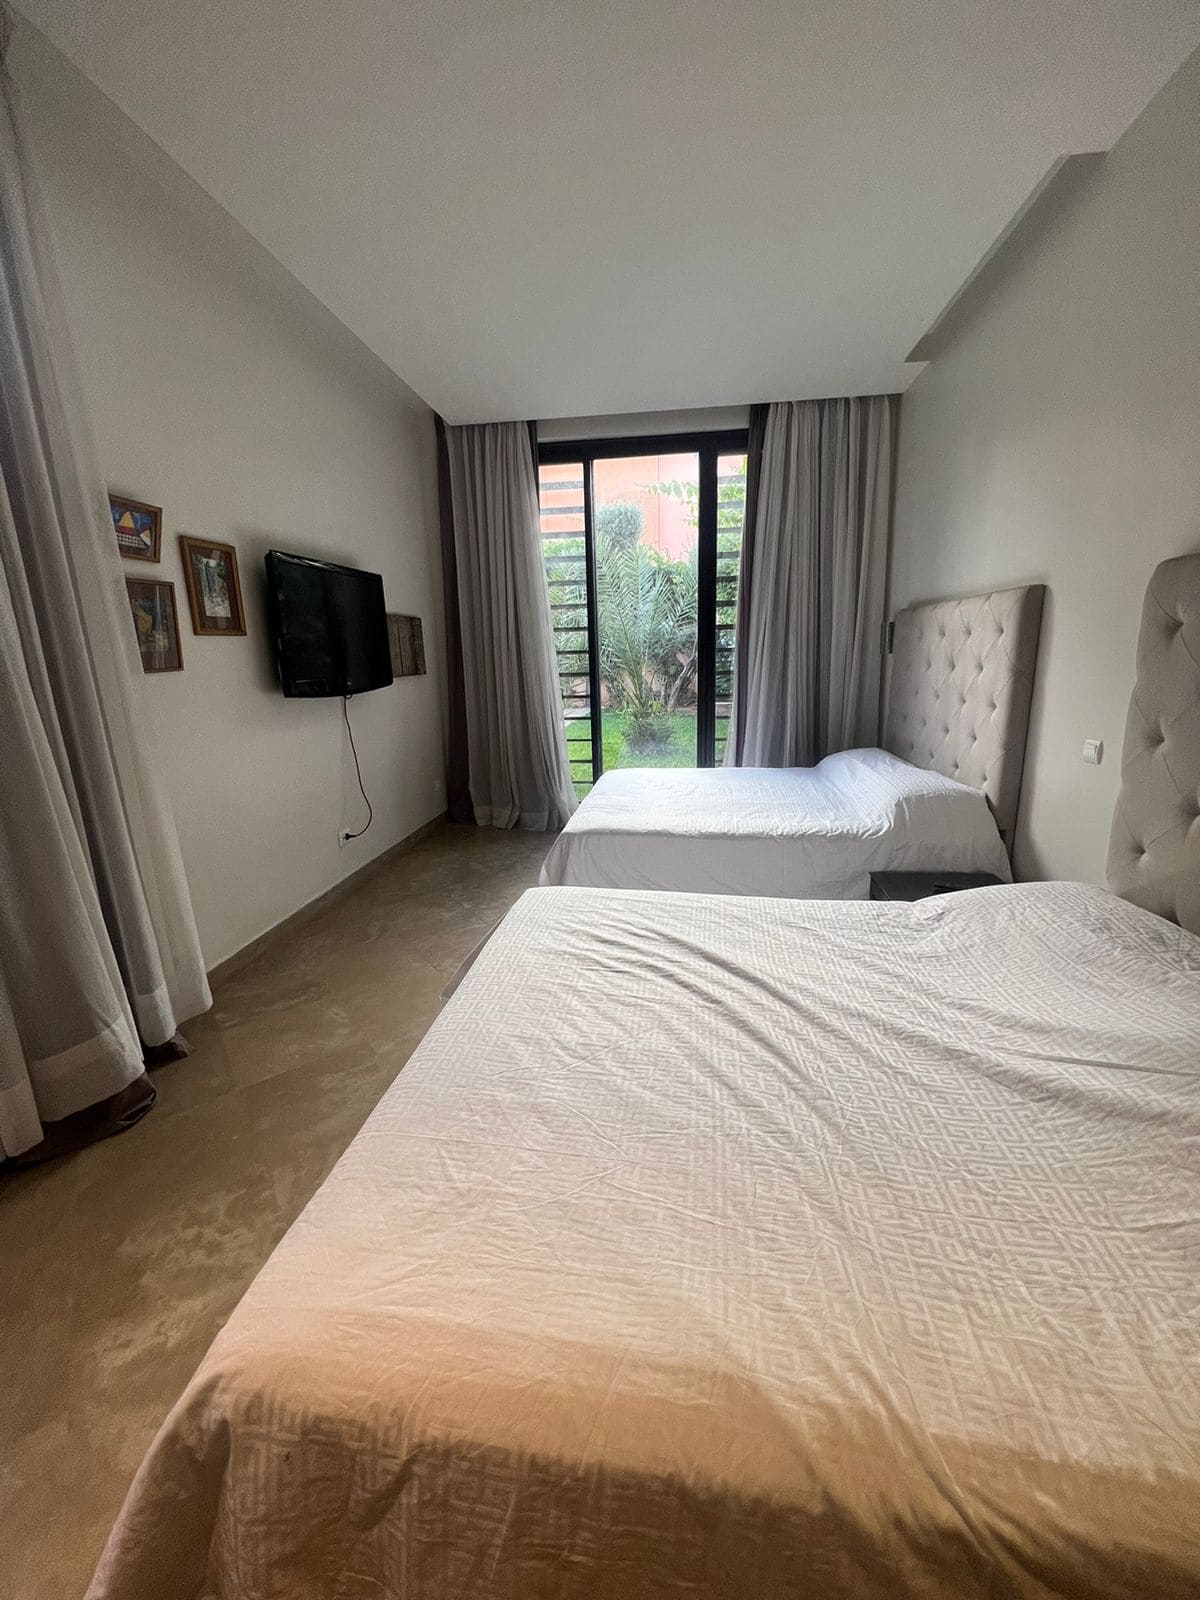 Chambre à coucher dans une villa de luxe à louer à Marrakech